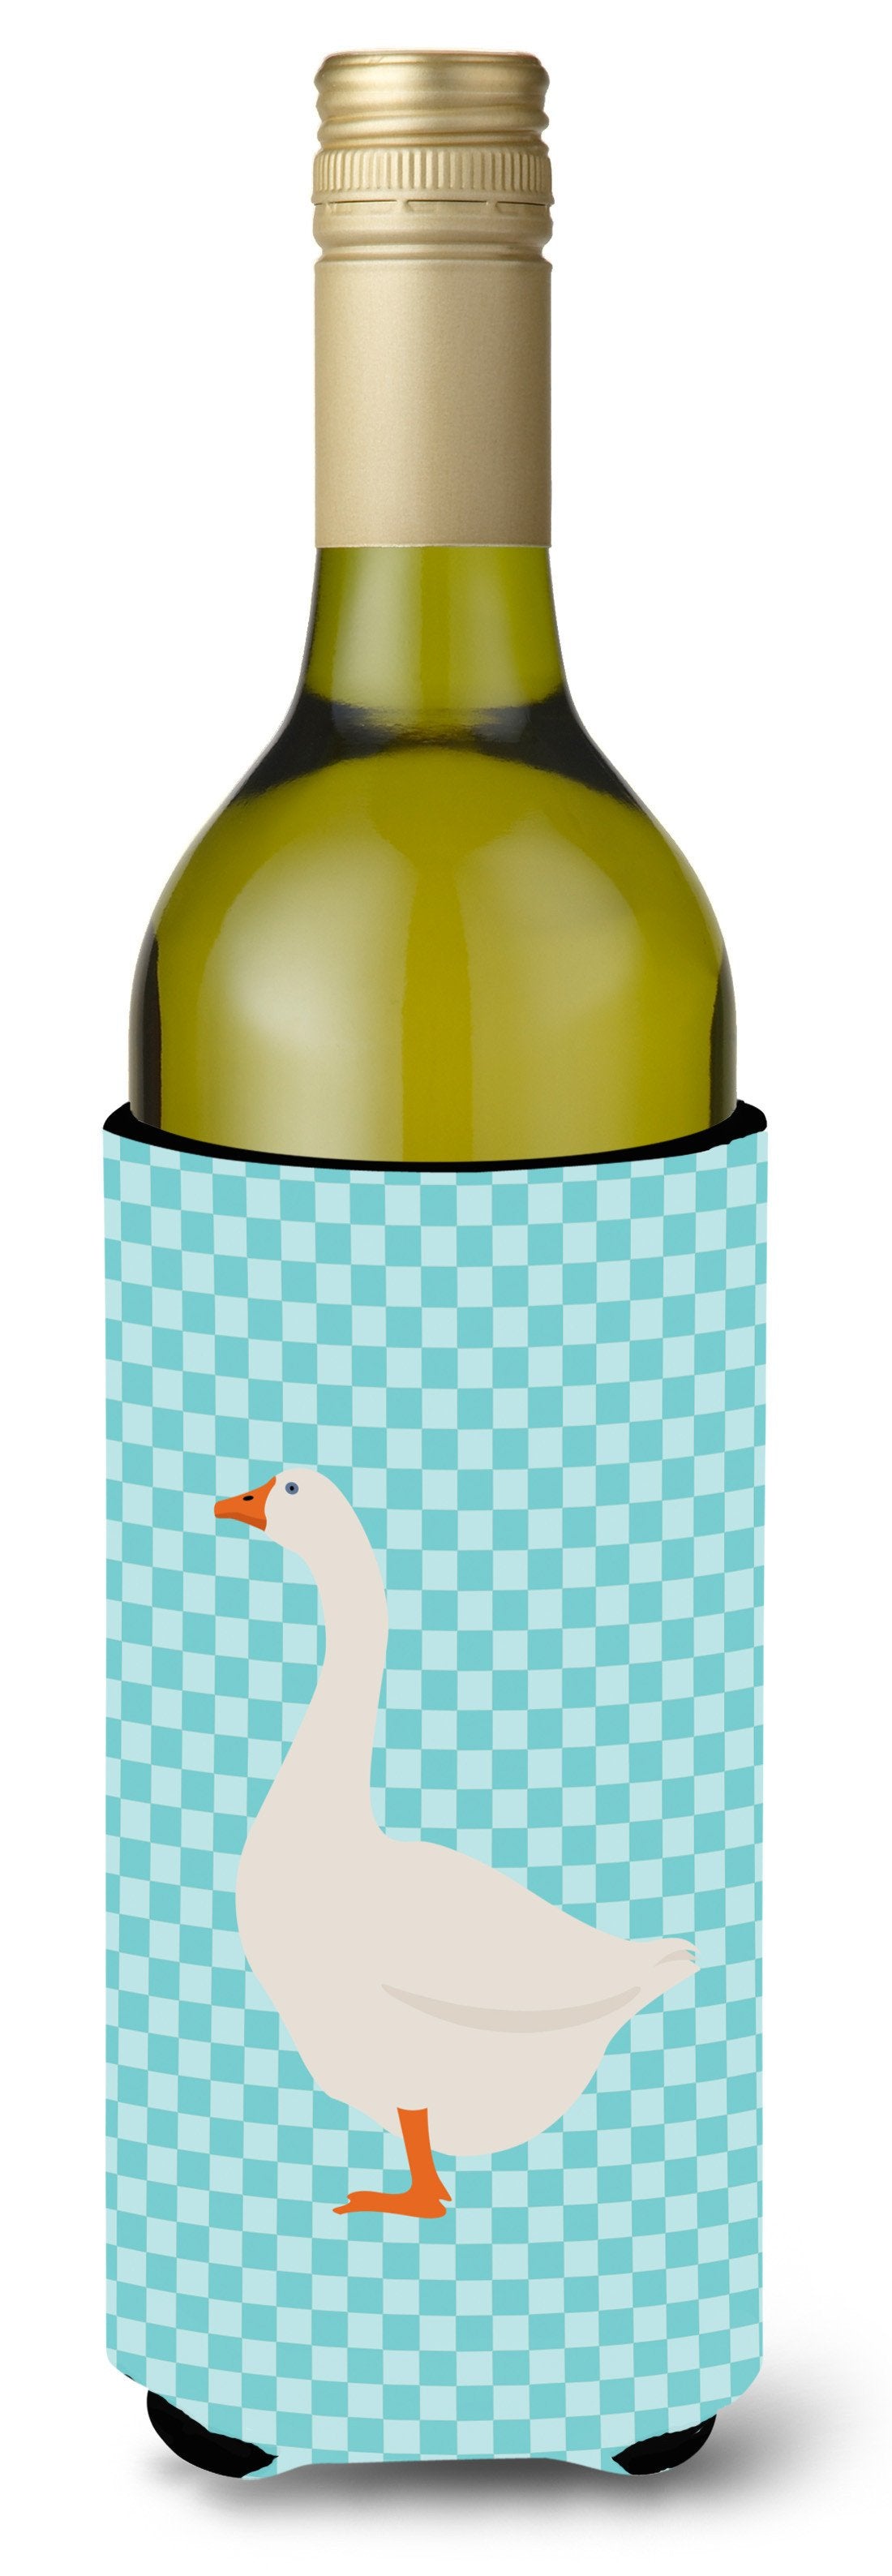 Embden Goose Blue Check Wine Bottle Beverge Insulator Hugger BB8066LITERK by Caroline's Treasures